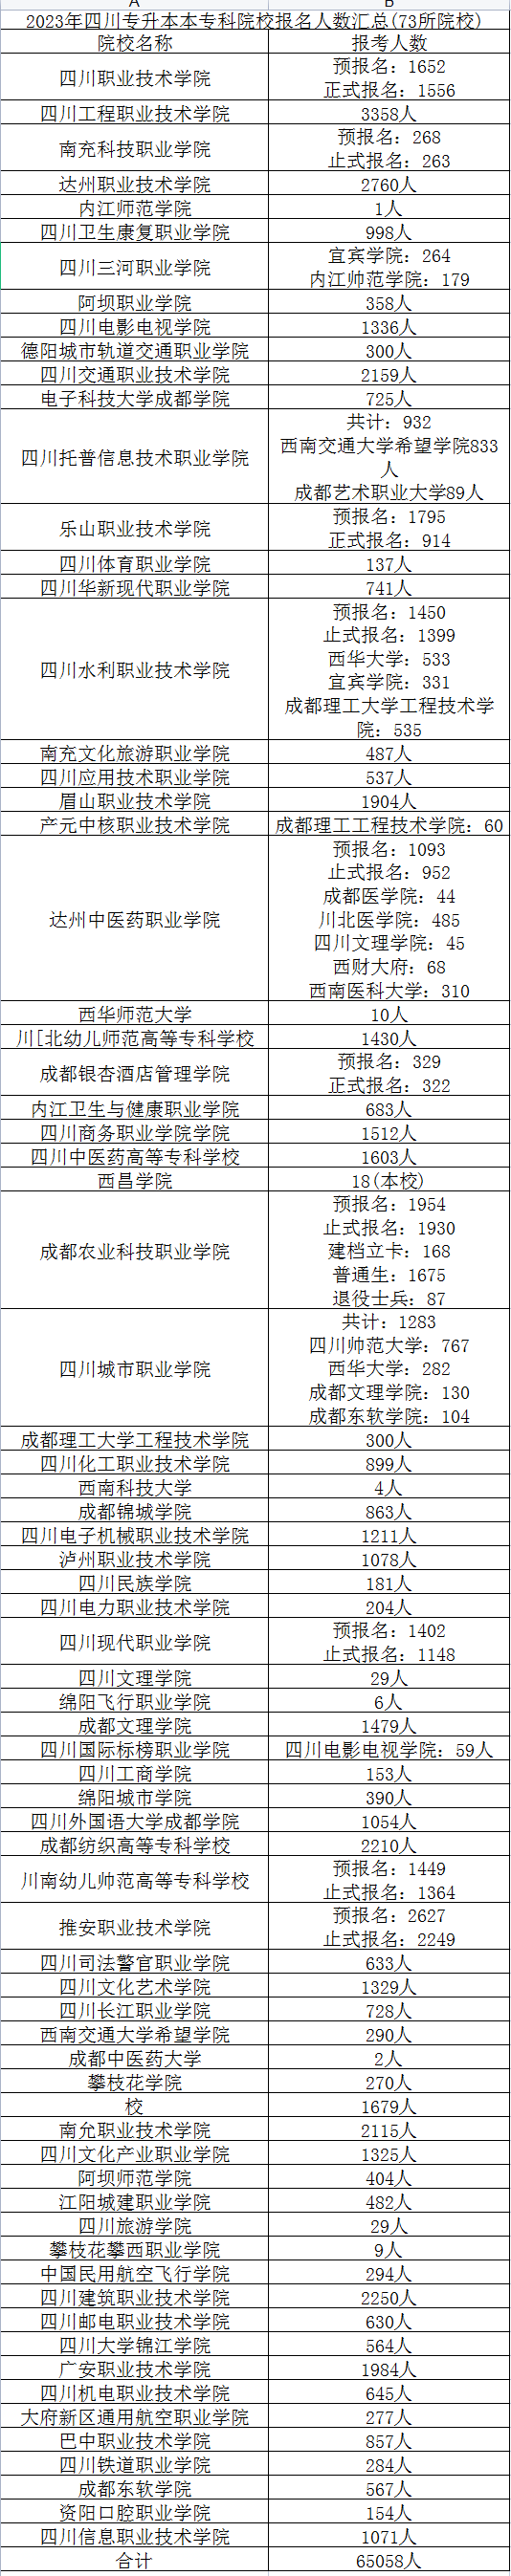 2023年四川省专升本报名总人数